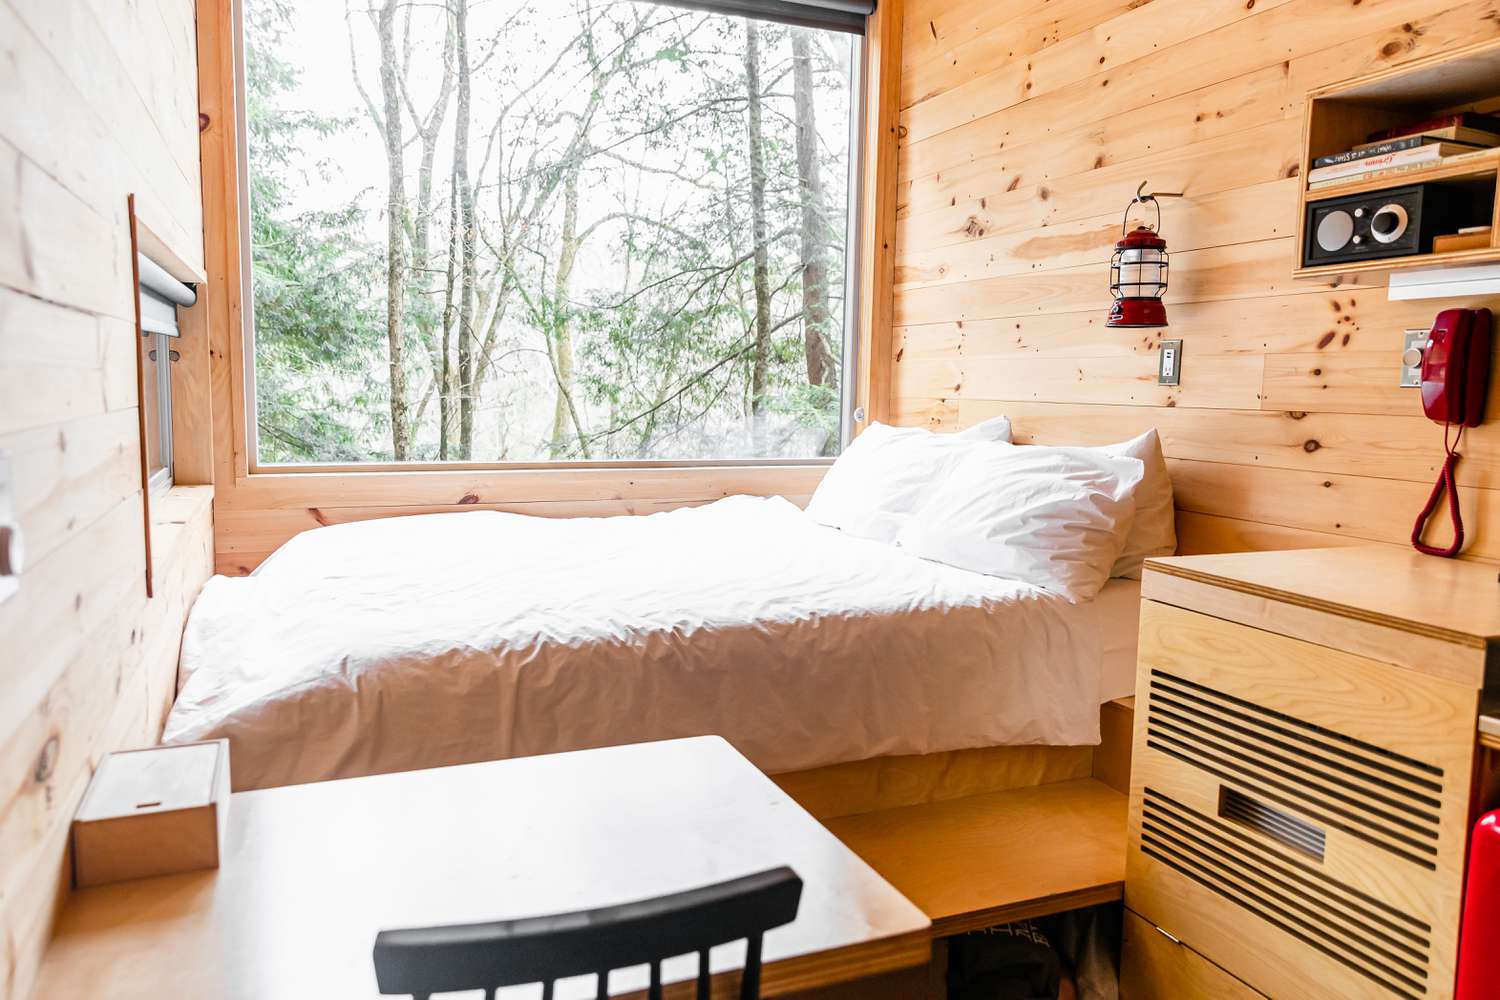 Casa minúscula de madeira com cama ao lado de uma grande janela que mostra as árvores